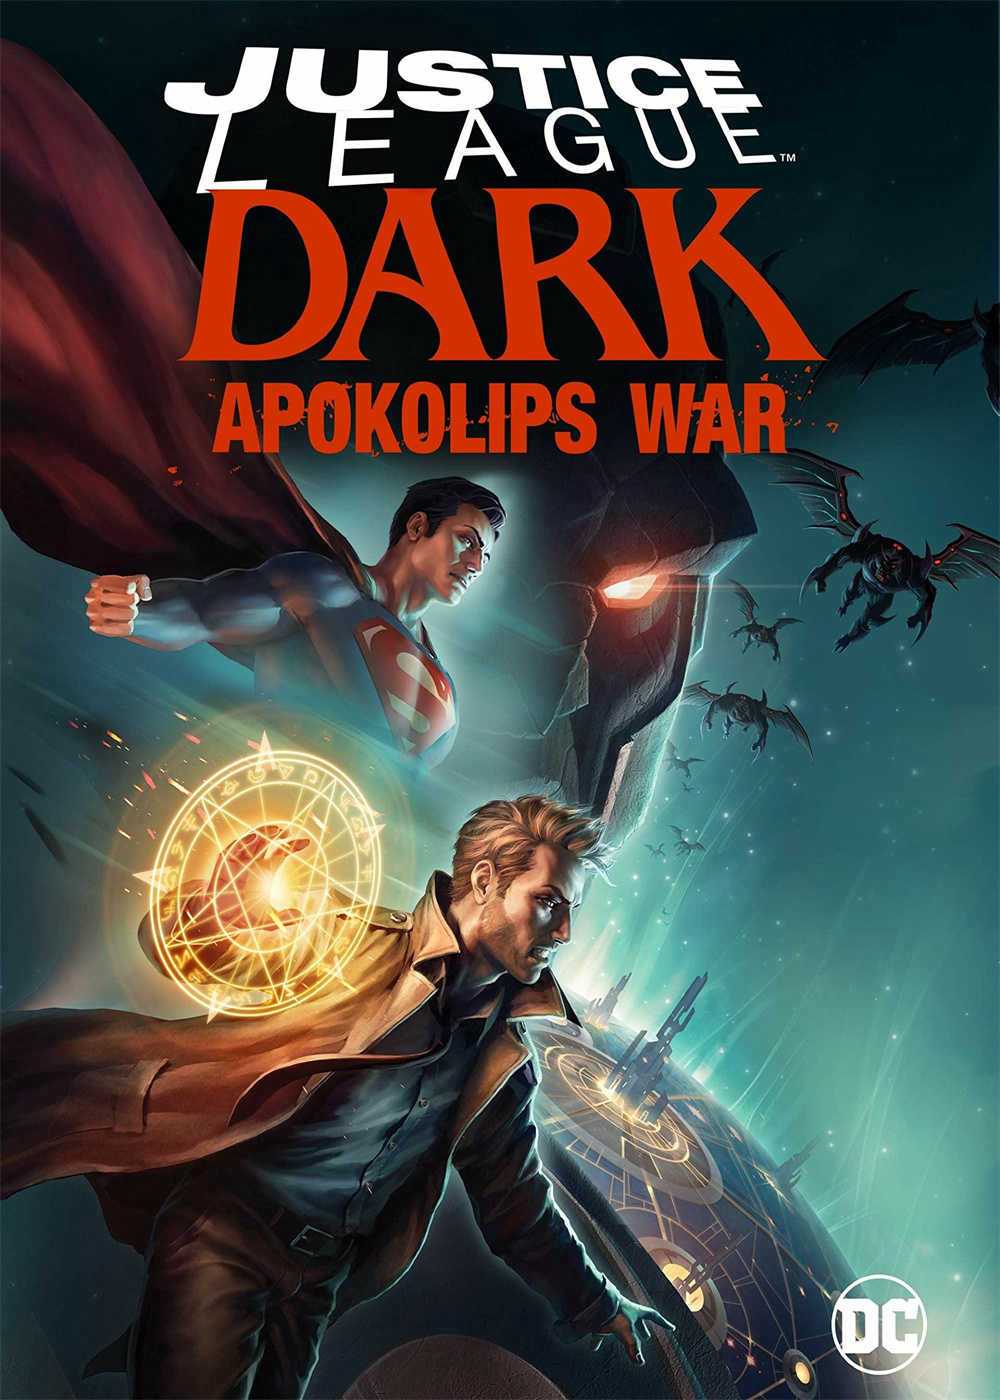 Justice league dark: apokolips war - Justice league dark: apokolips war